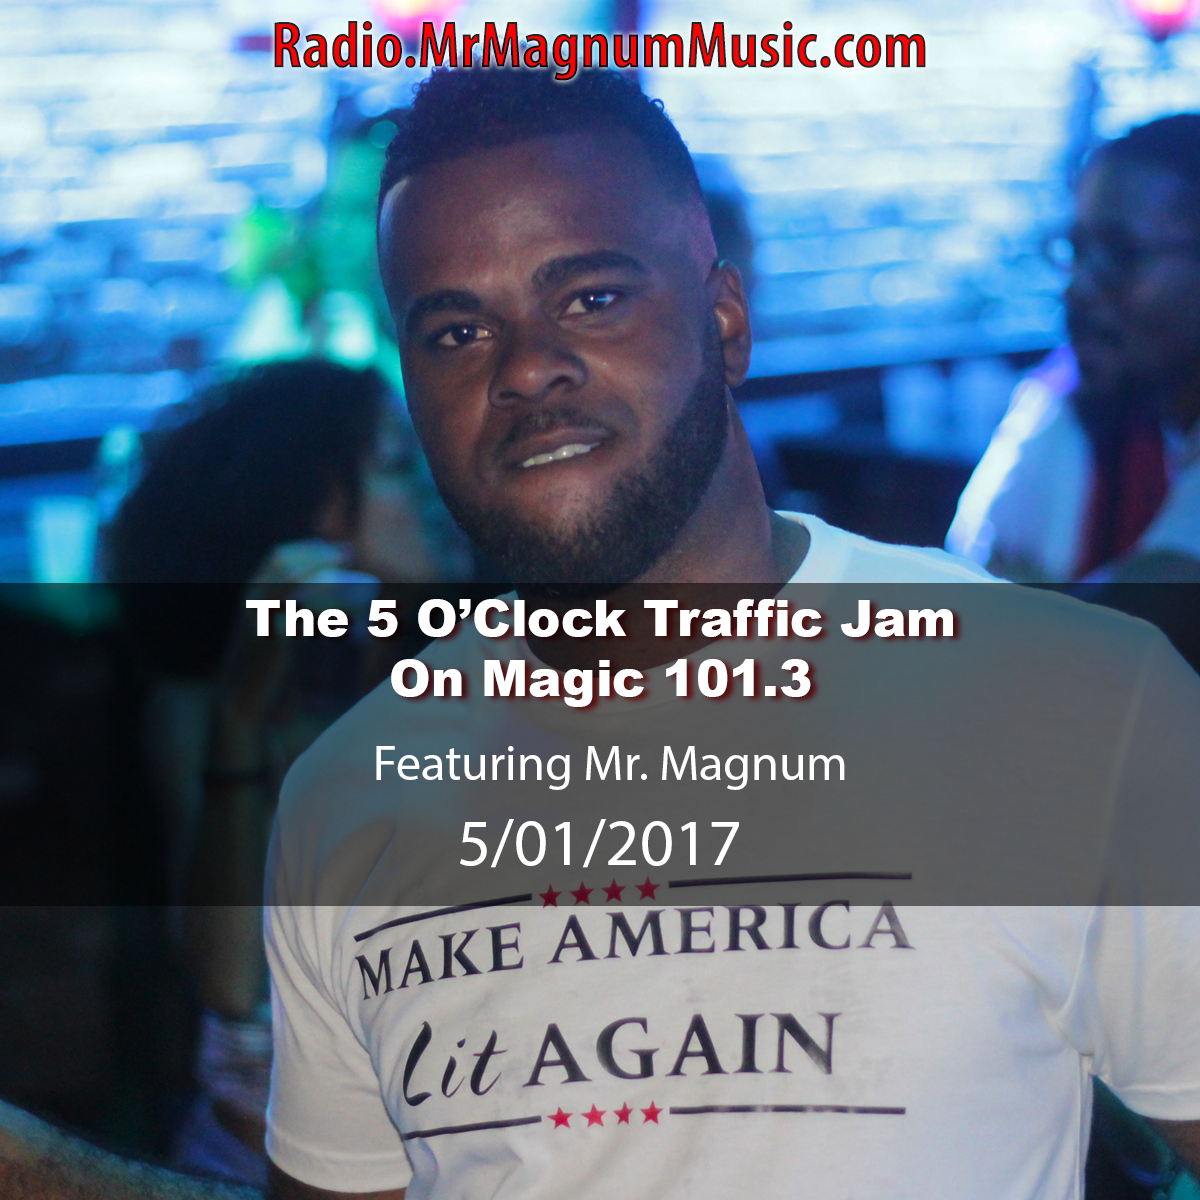 featuring Gainesville's #1 DJ, Mr. Magnum on Magic 101.3